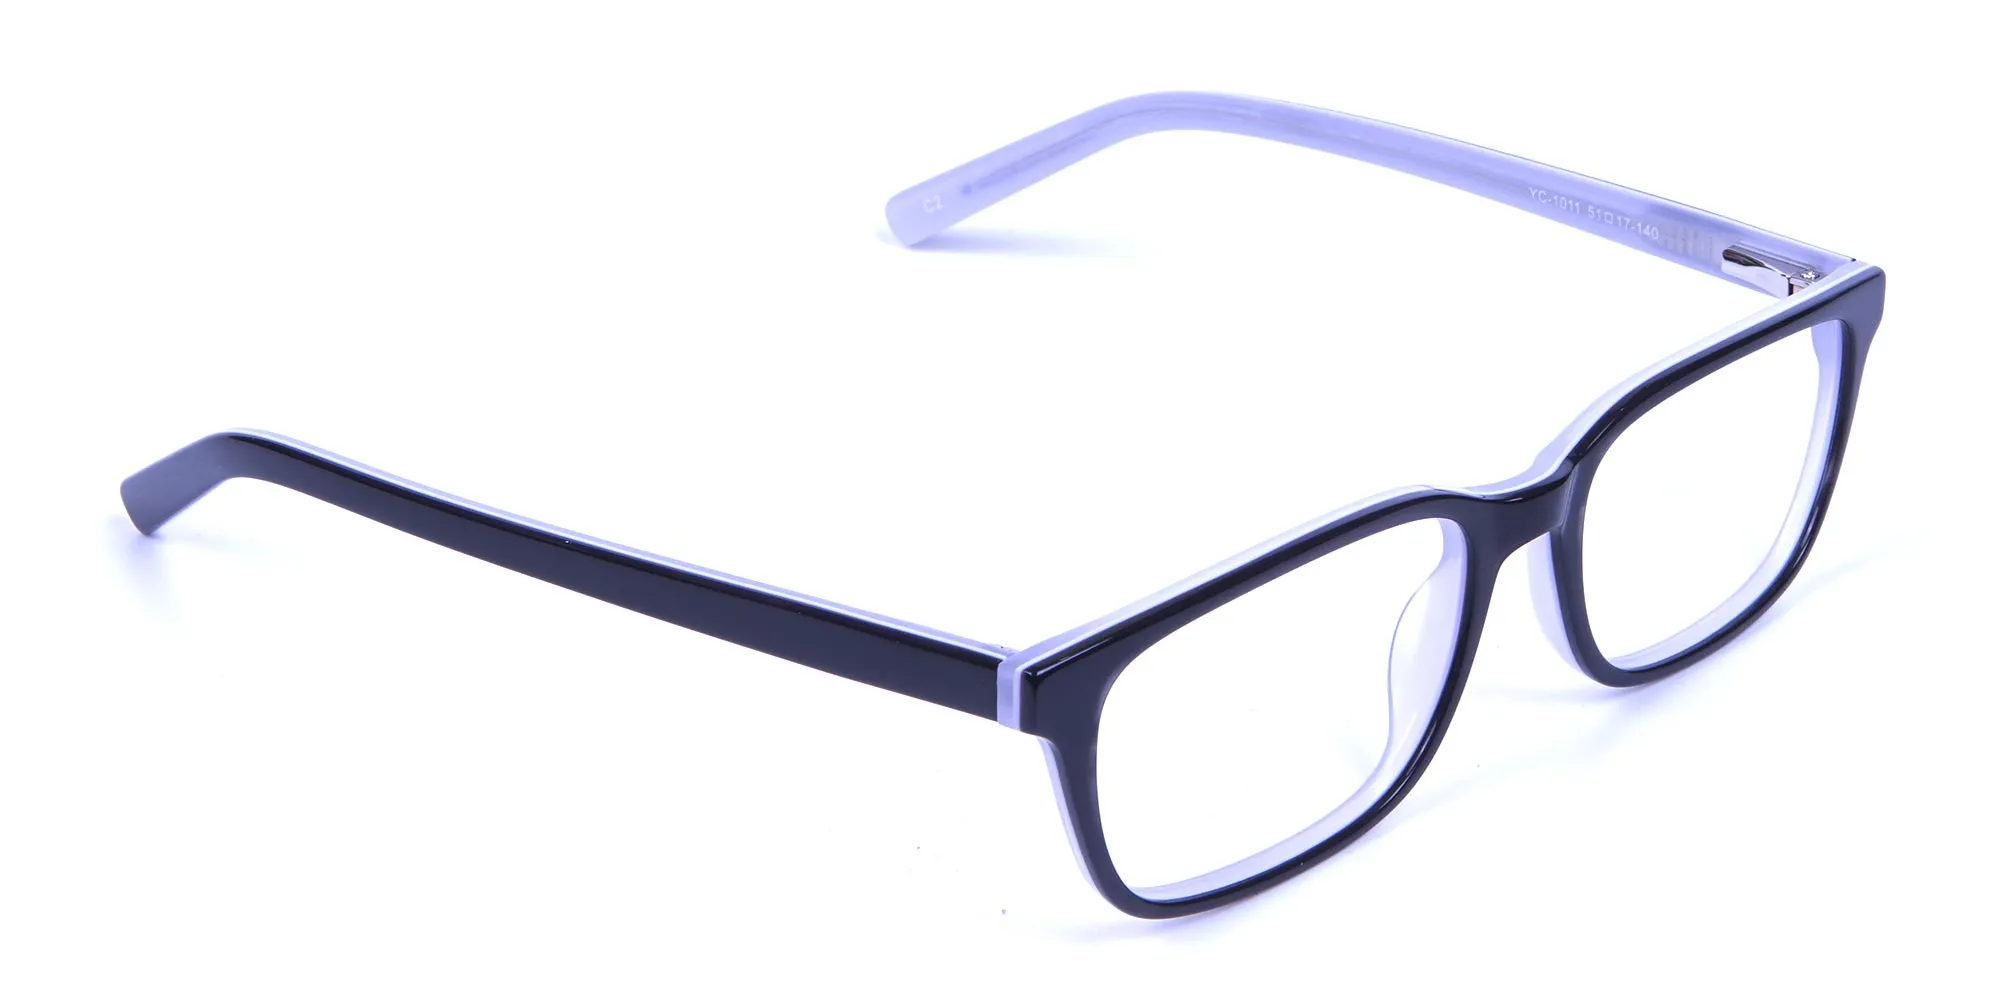 Unisex Black & White Rectangular Glasses - 1